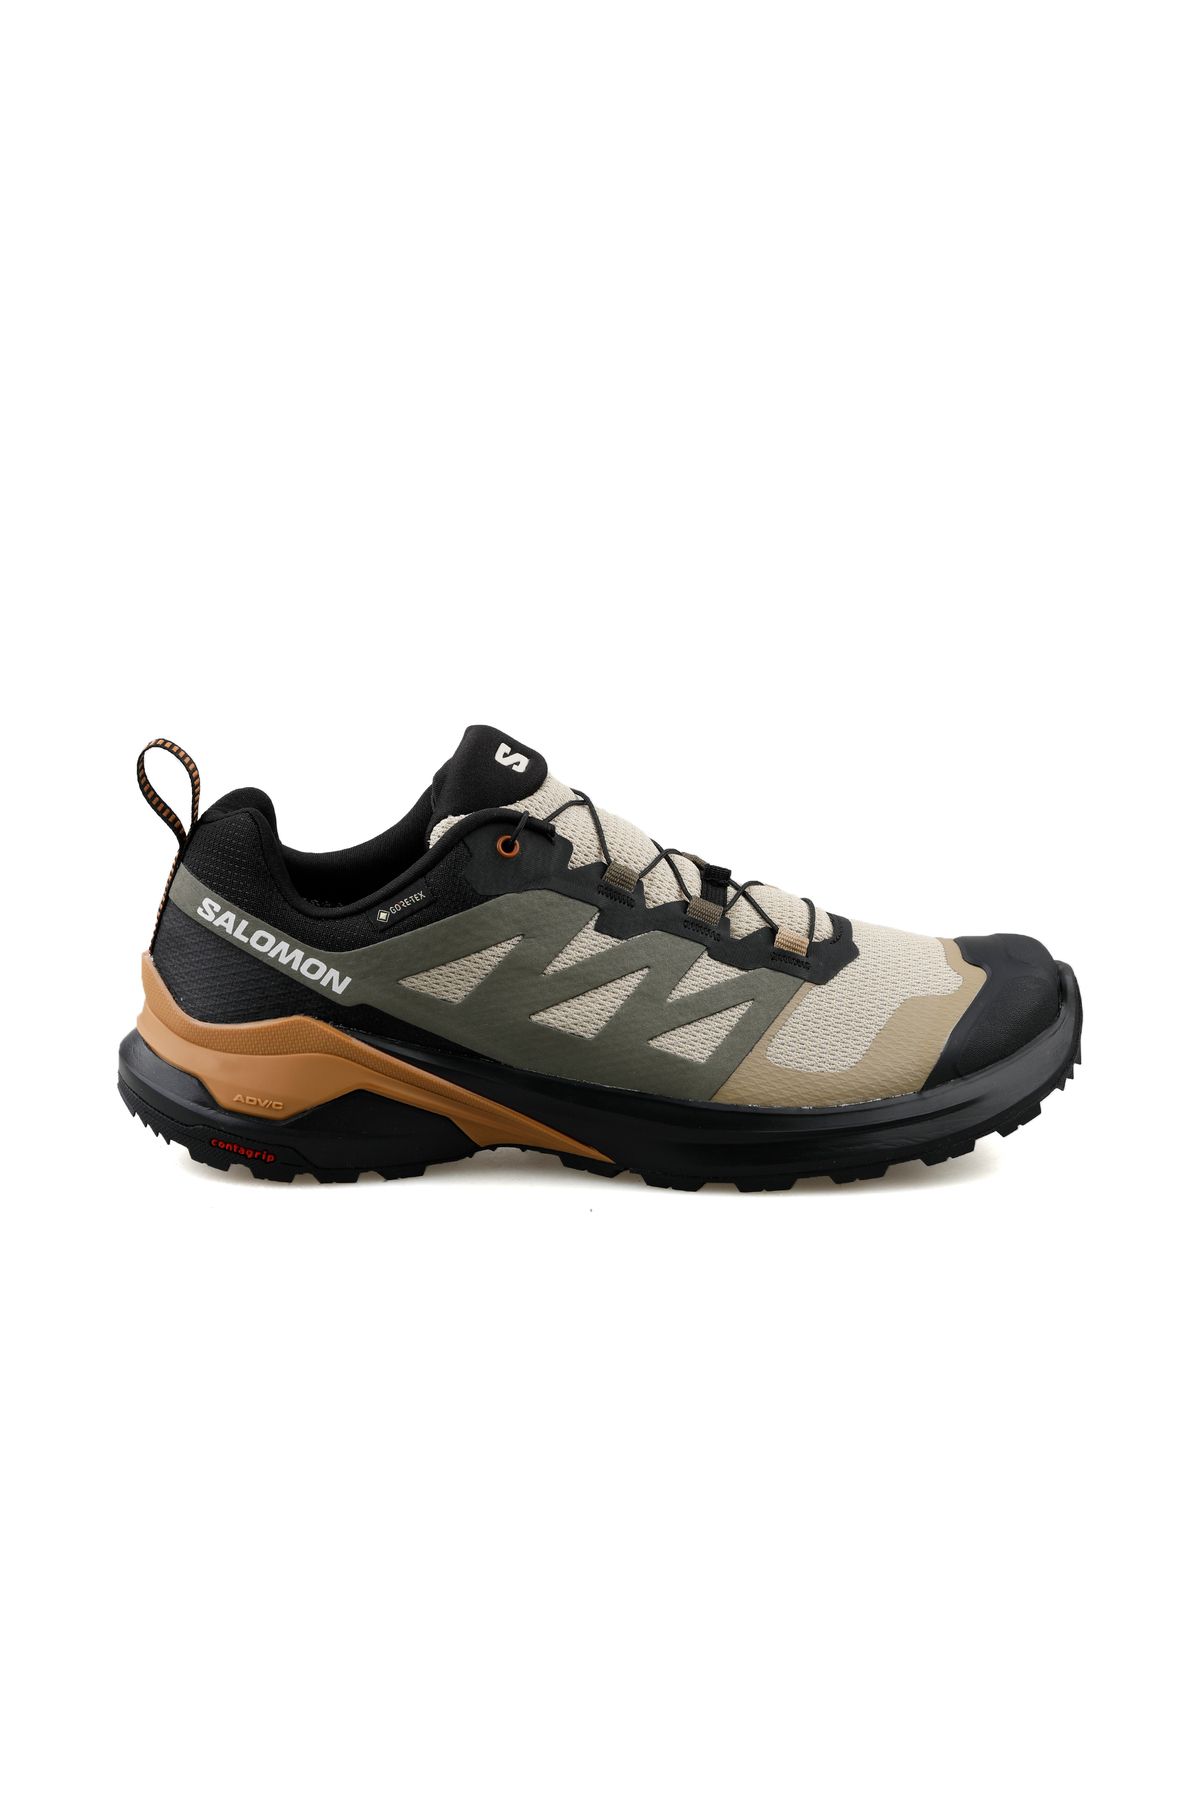 Salomon X Adventure Gtx Erkek Koşu Ayakkabısı L47321300 Renkli